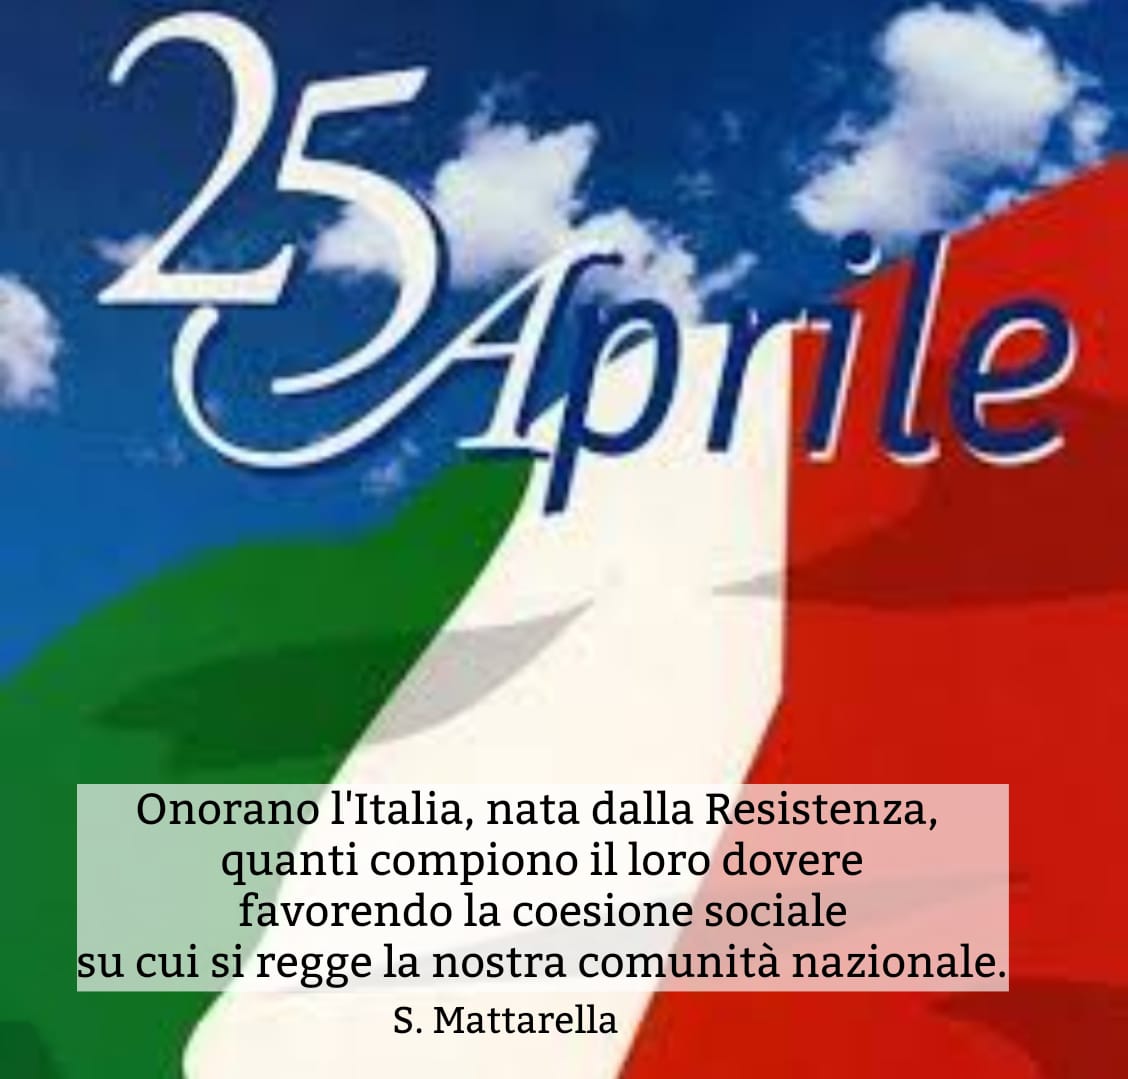 Beati gli artigiani di pace e solidarietà. Viva l'Italia!